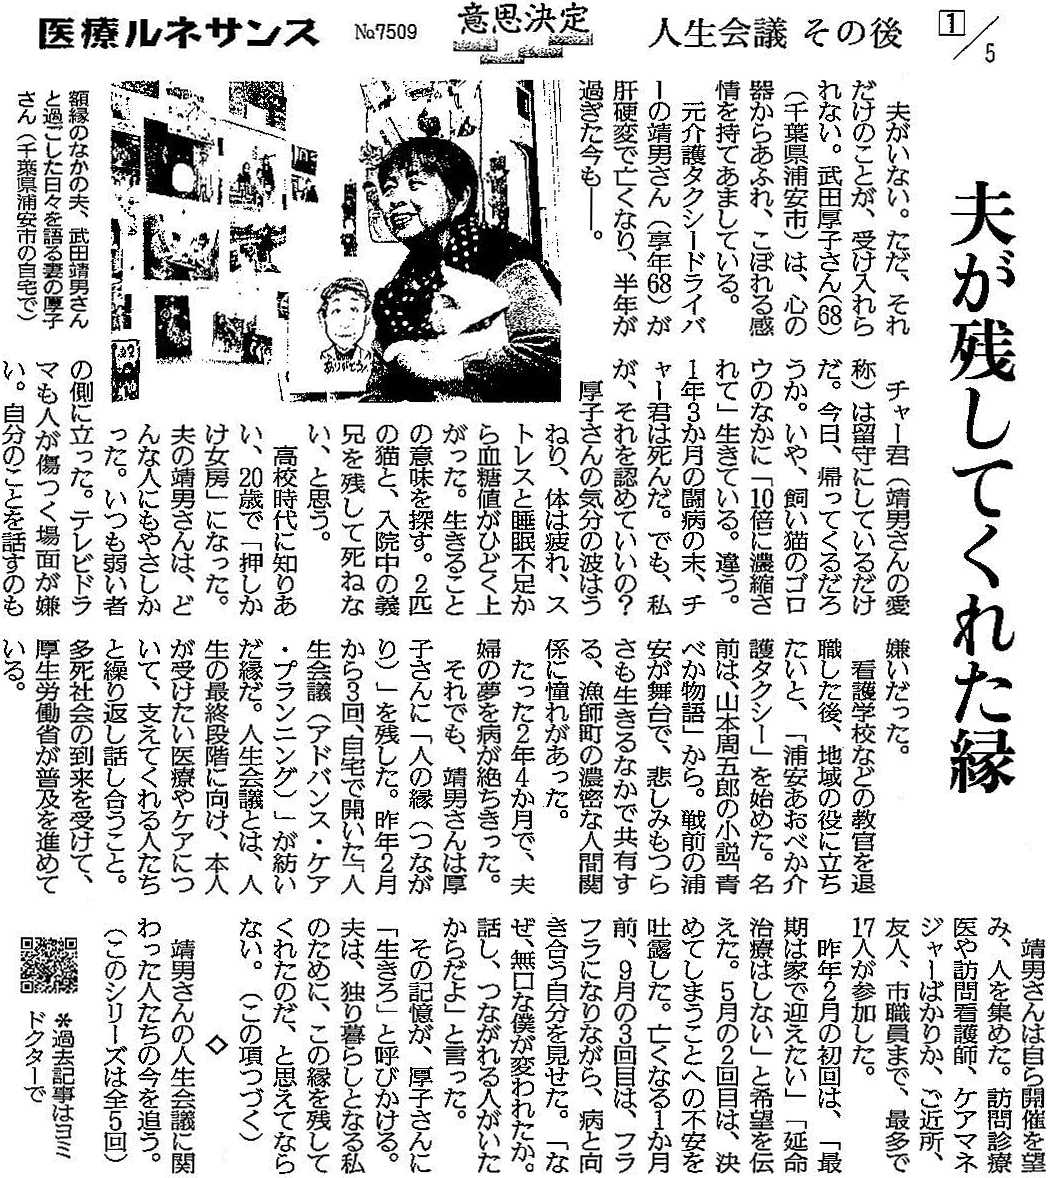 読売新聞 2021年4月22日掲載記事